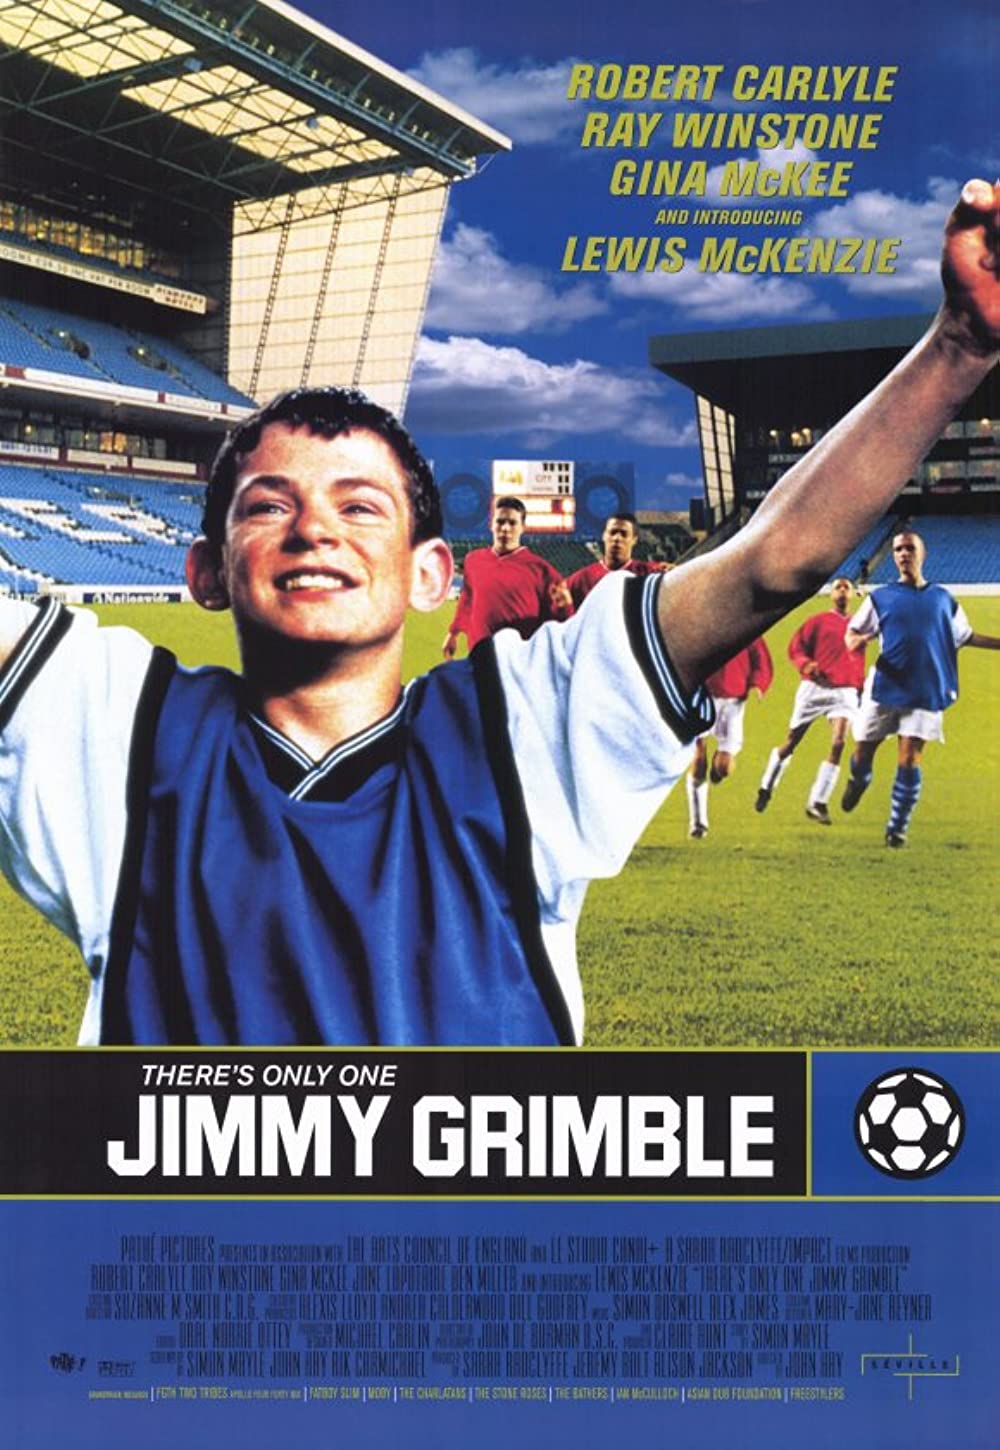 Filmbeschreibung zu Es gibt nur einen Jimmy Grimble